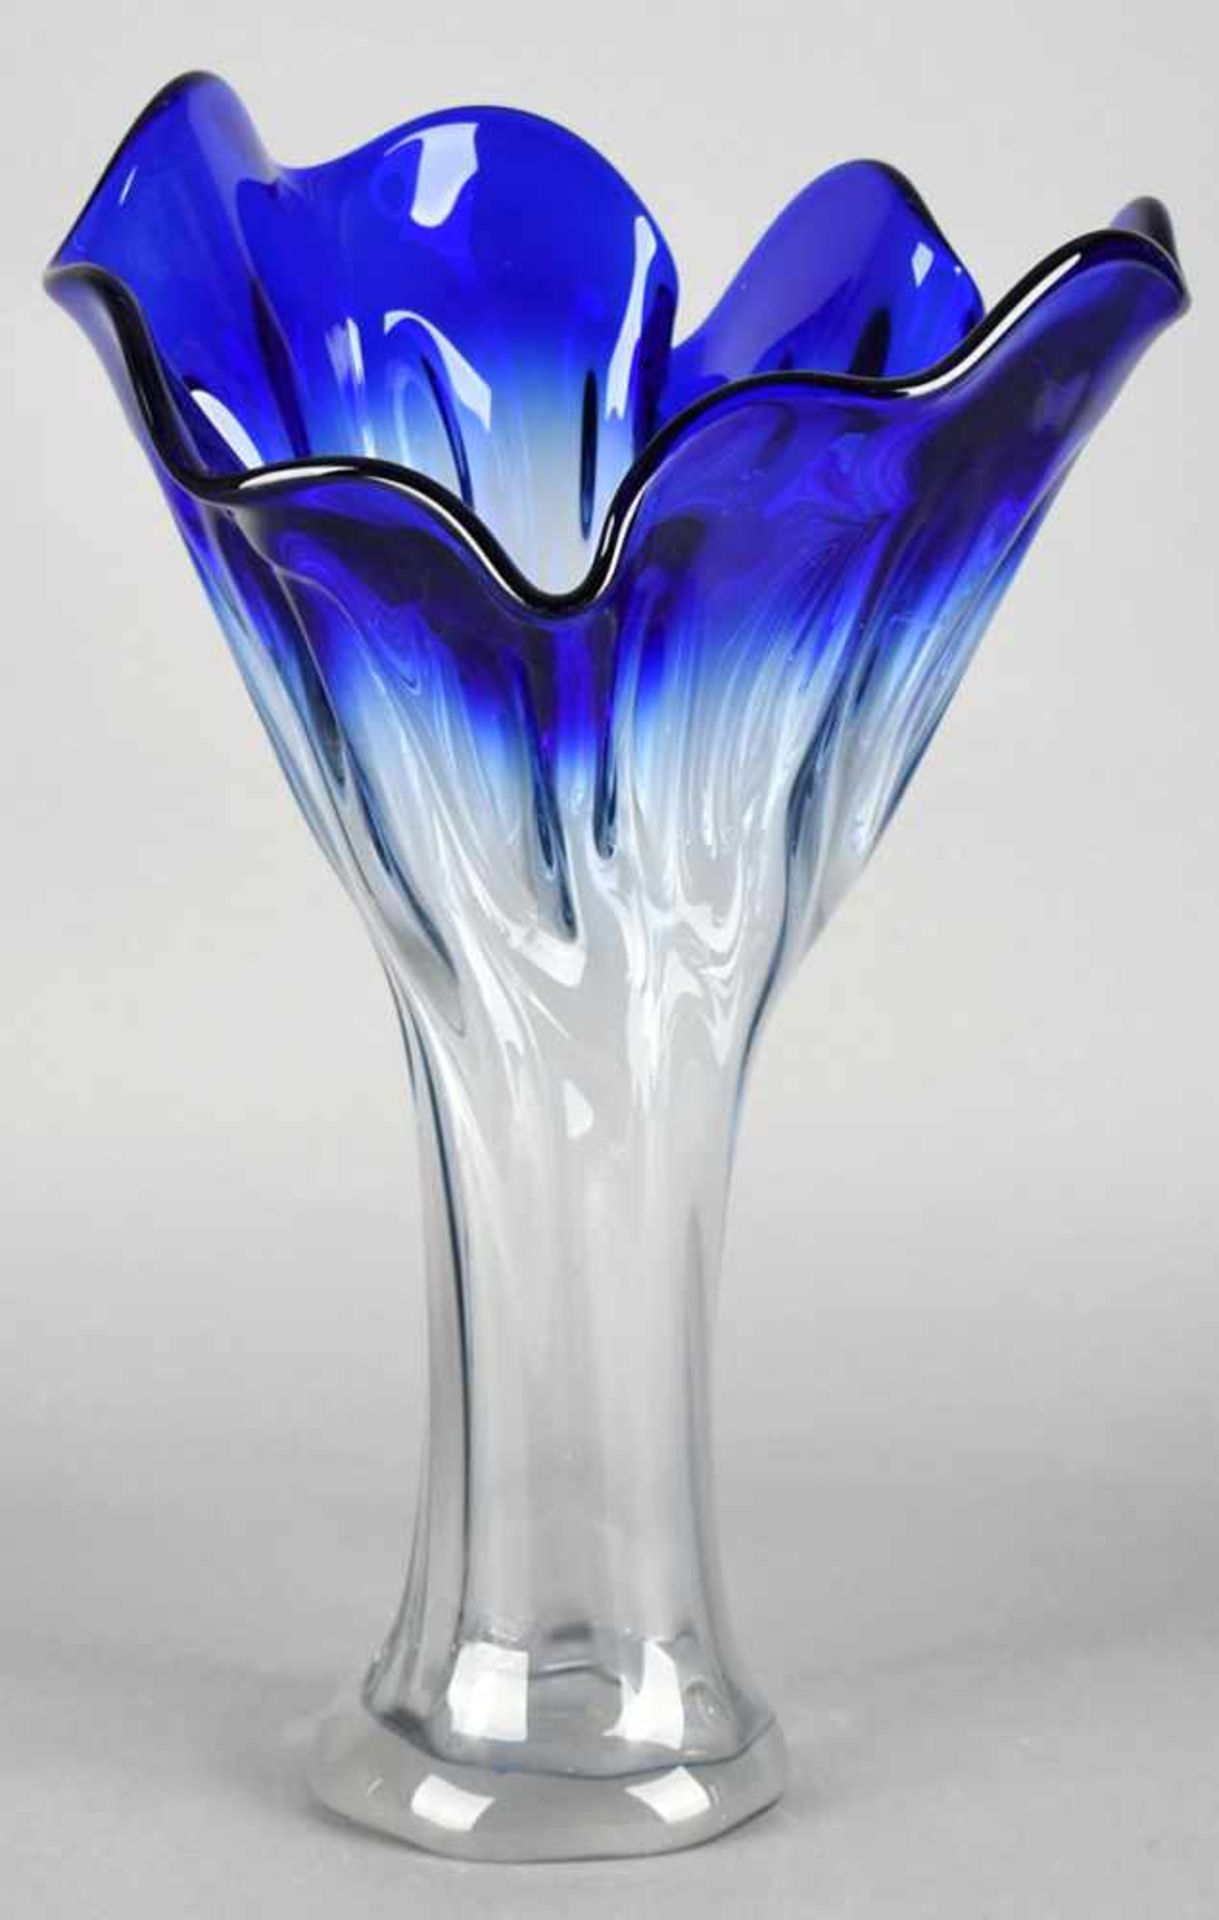 Große Vase farbloses Glas im Farbverlauf nach Blau, schwere Qualität, über ausgestelltem Stand - Bild 2 aus 2